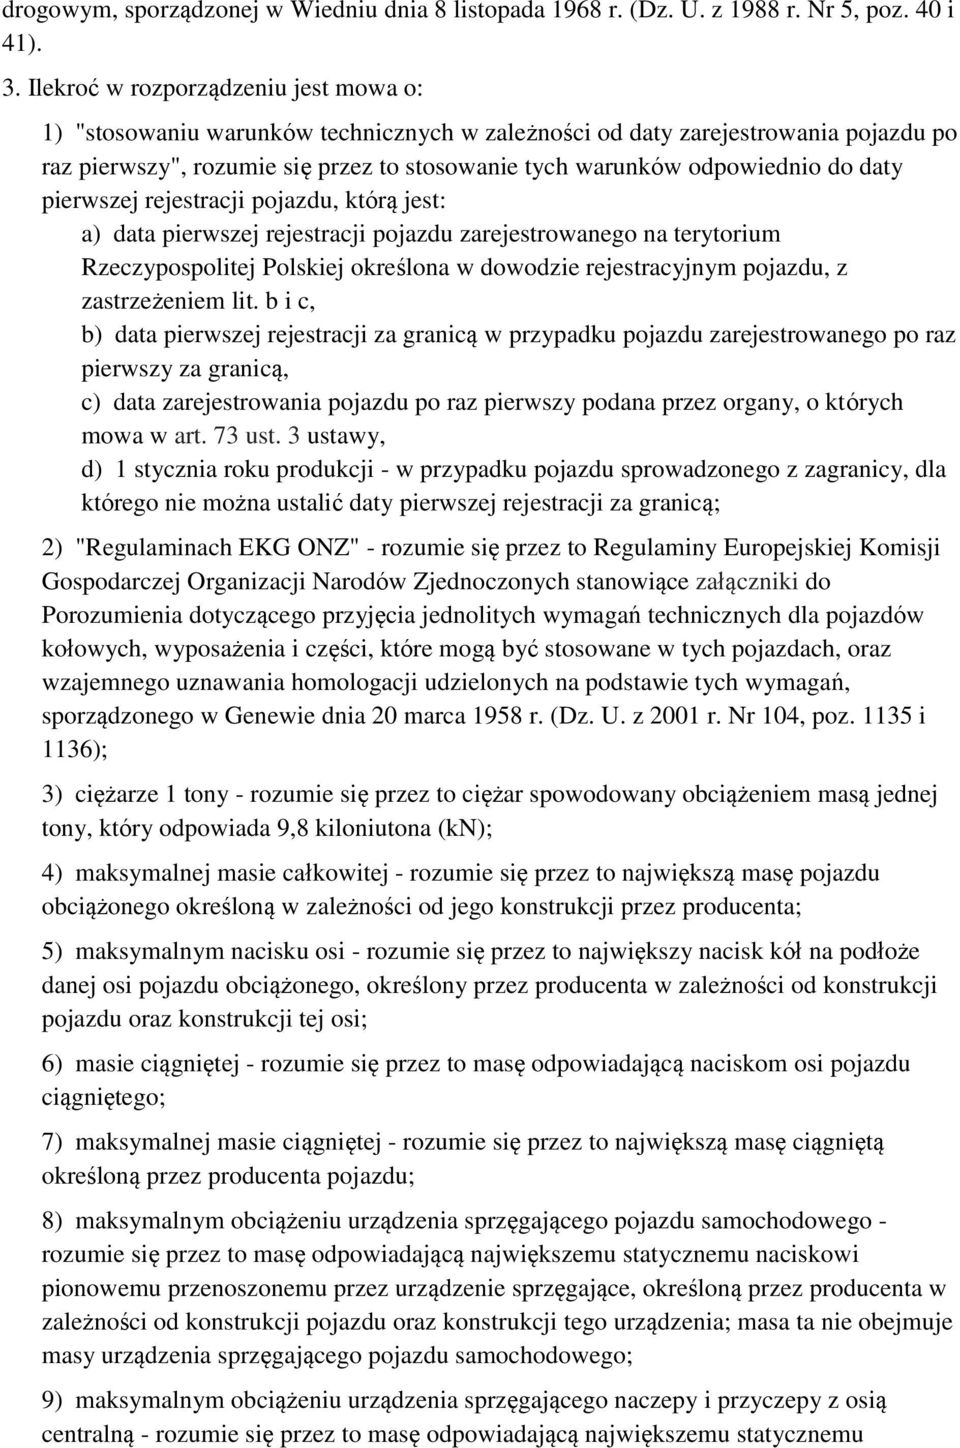 daty pierwszej rejestracji pojazdu, którą jest: a) data pierwszej rejestracji pojazdu zarejestrowanego na terytorium Rzeczypospolitej Polskiej określona w dowodzie rejestracyjnym pojazdu, z